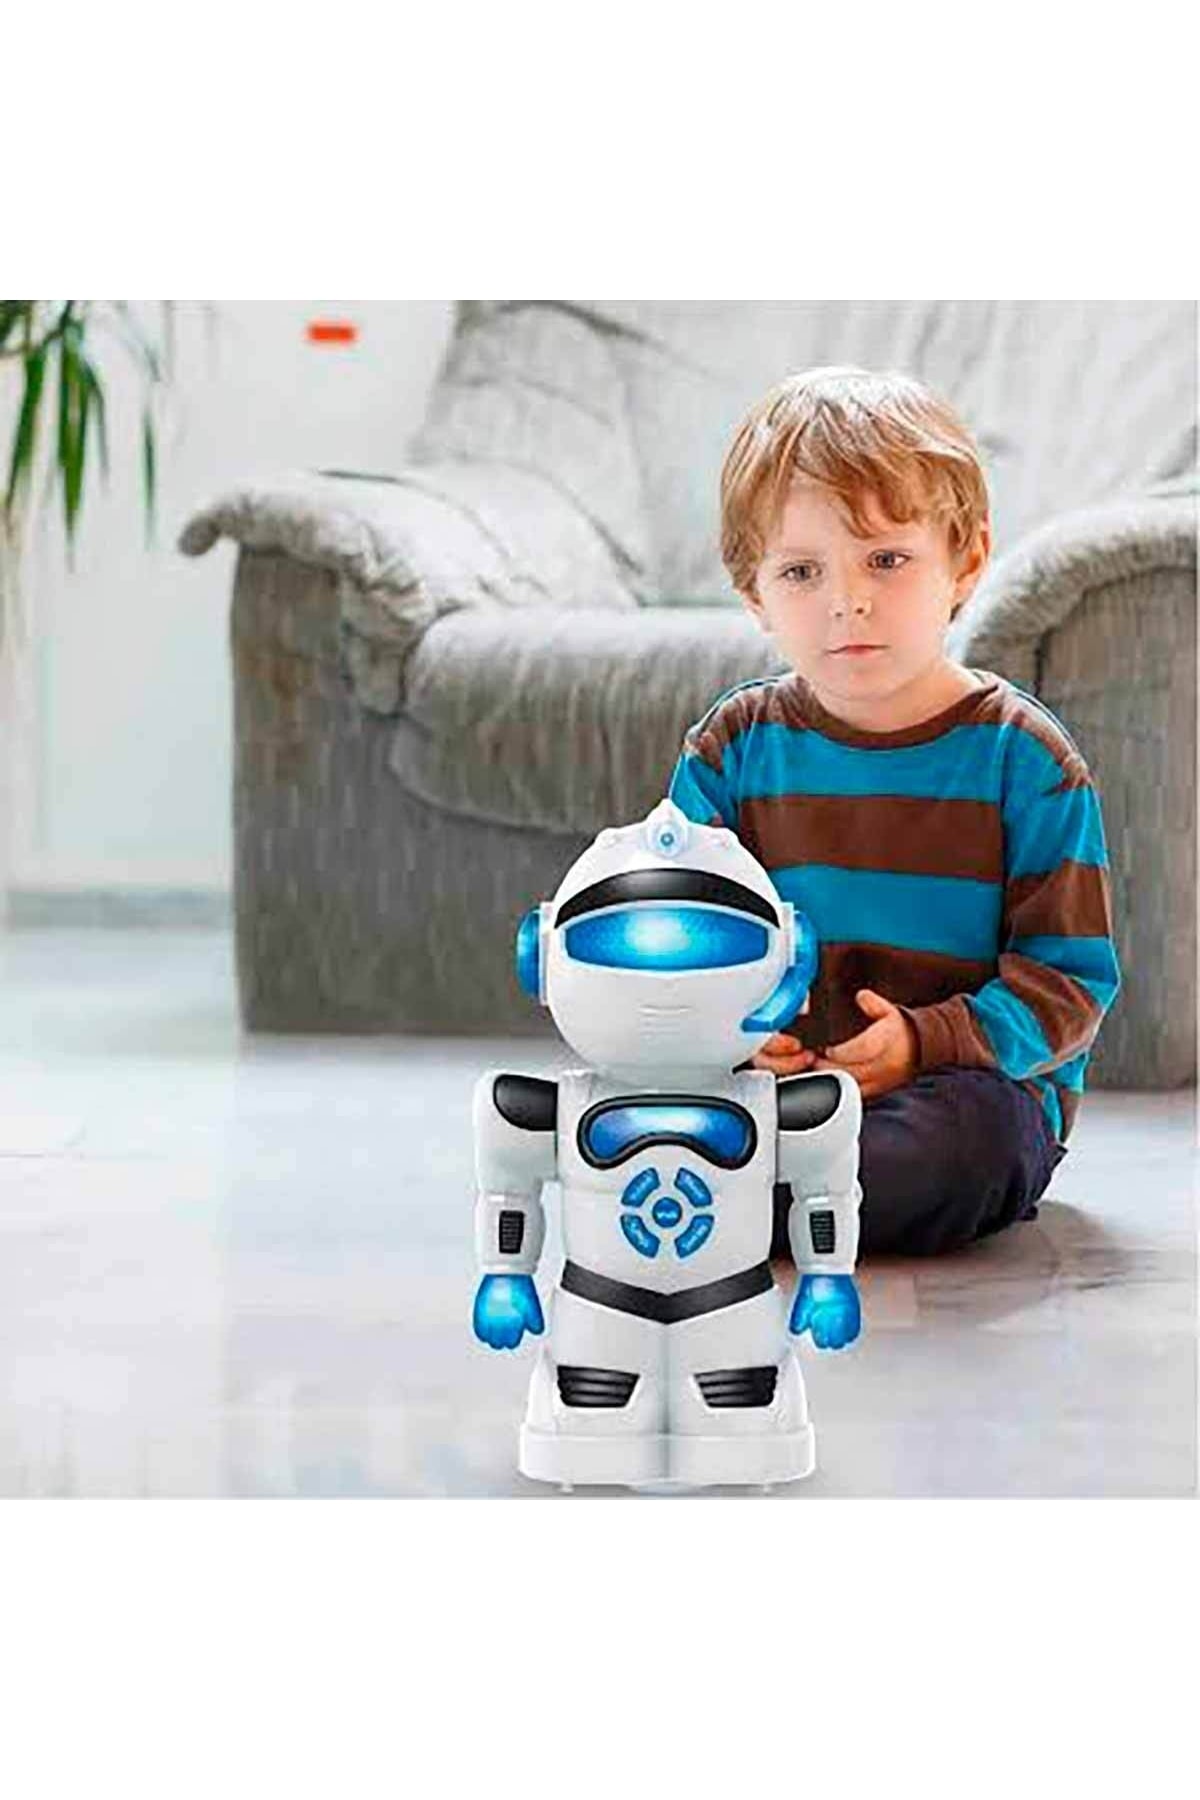 Birlik Oyuncak Robotto Jr. Şarkı Söyleyen Ve Yürüyen Interaktif Robot Urt010-003-2 - Mavi